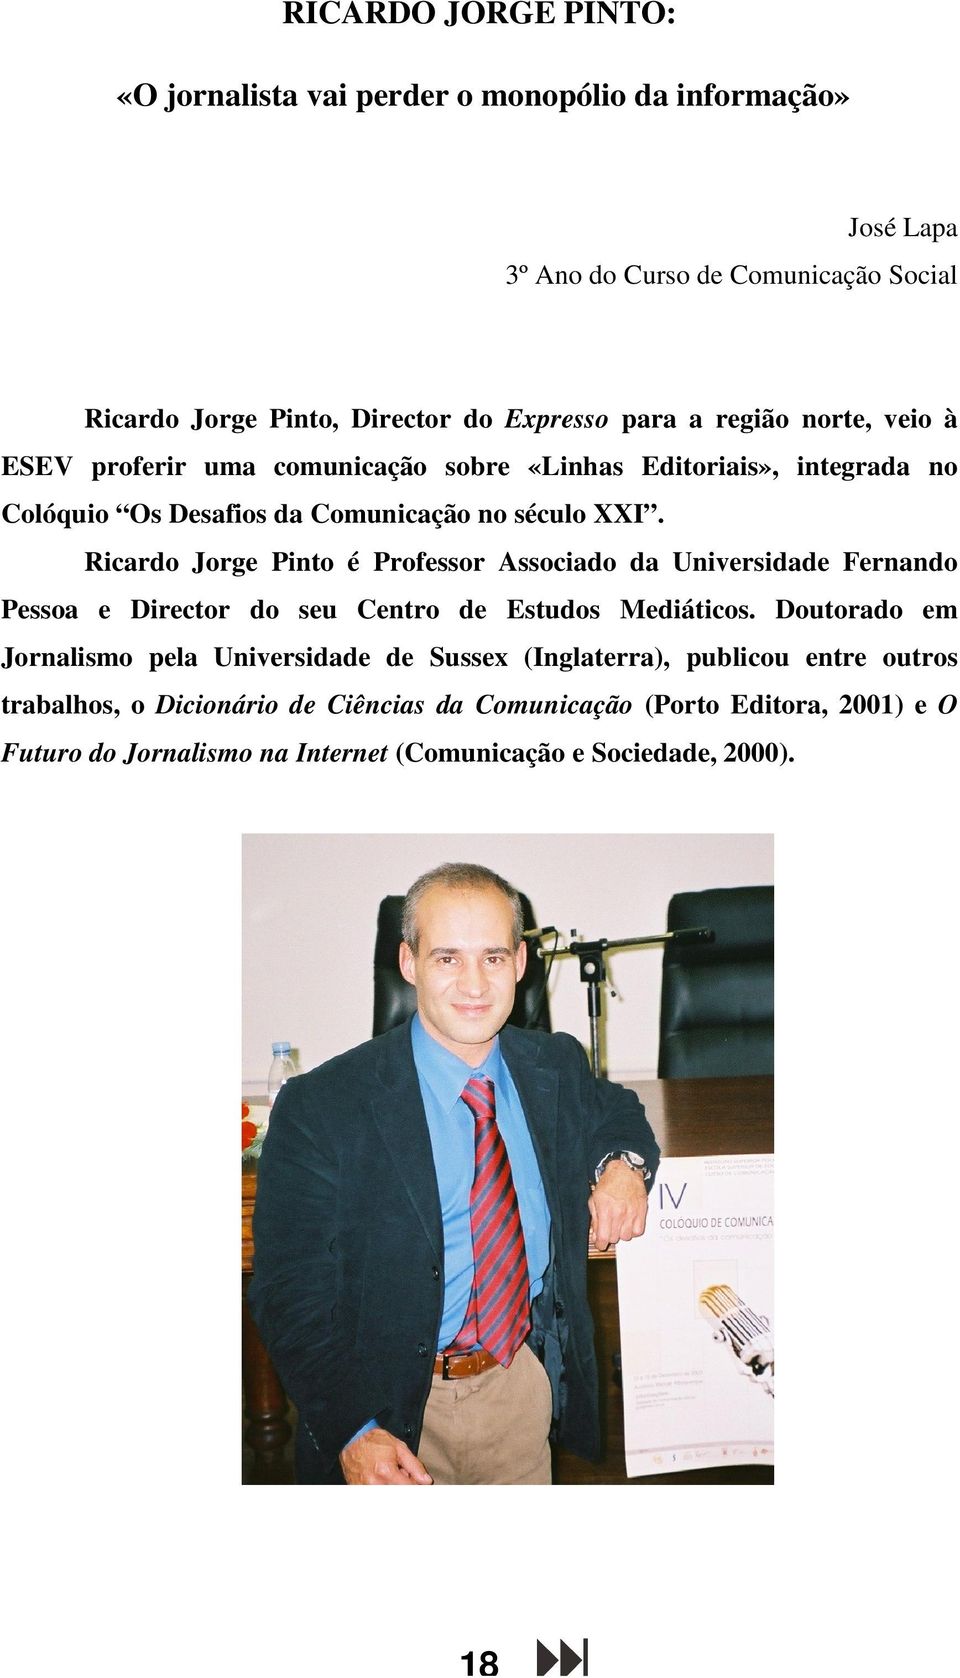 Ricardo Jorge Pinto é Professor Associado da Universidade Fernando Pessoa e Director do seu Centro de Estudos Mediáticos.